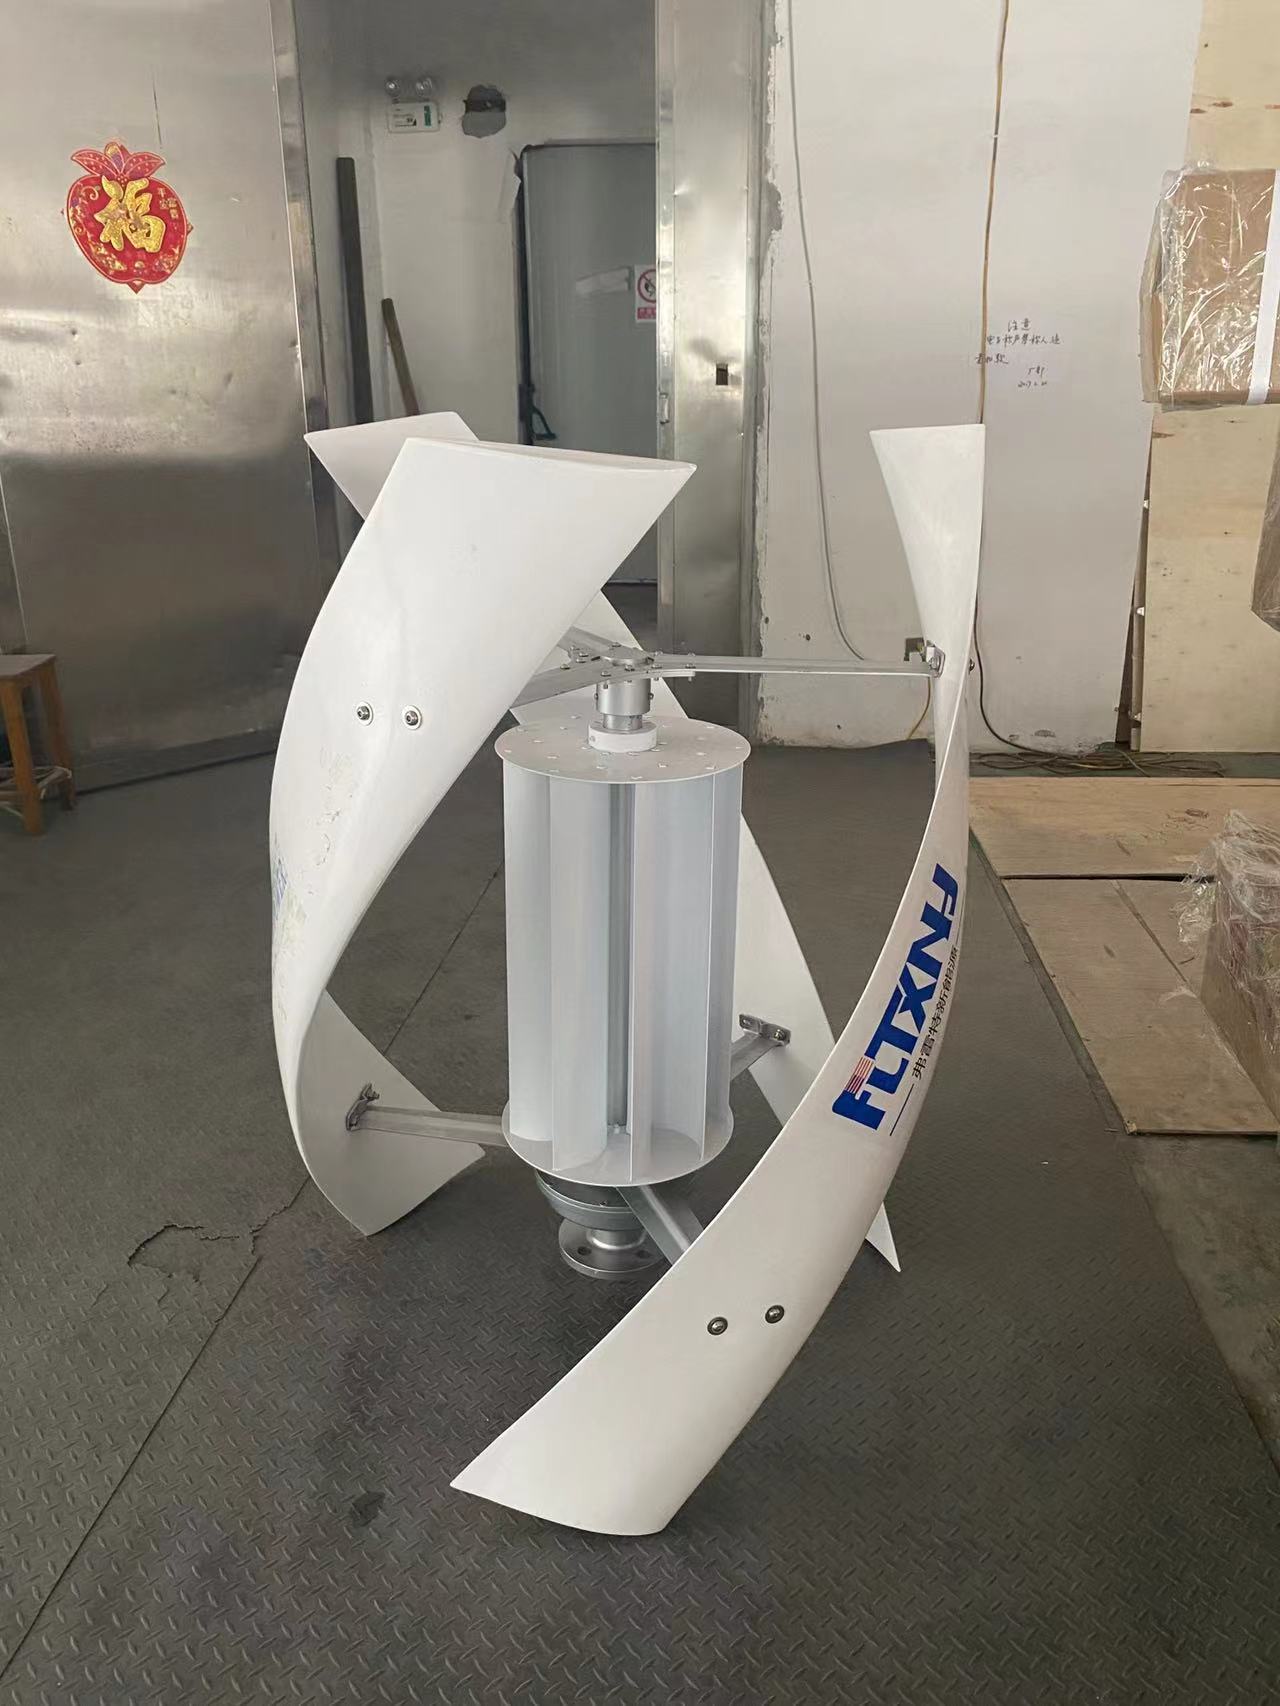 Precio de la turbina eólica de eje vertical de 10kw con alta calidad -  China Eje vertical de 10kw Aerogenerador de Eje Vertical de 10kw, Molino de  Viento